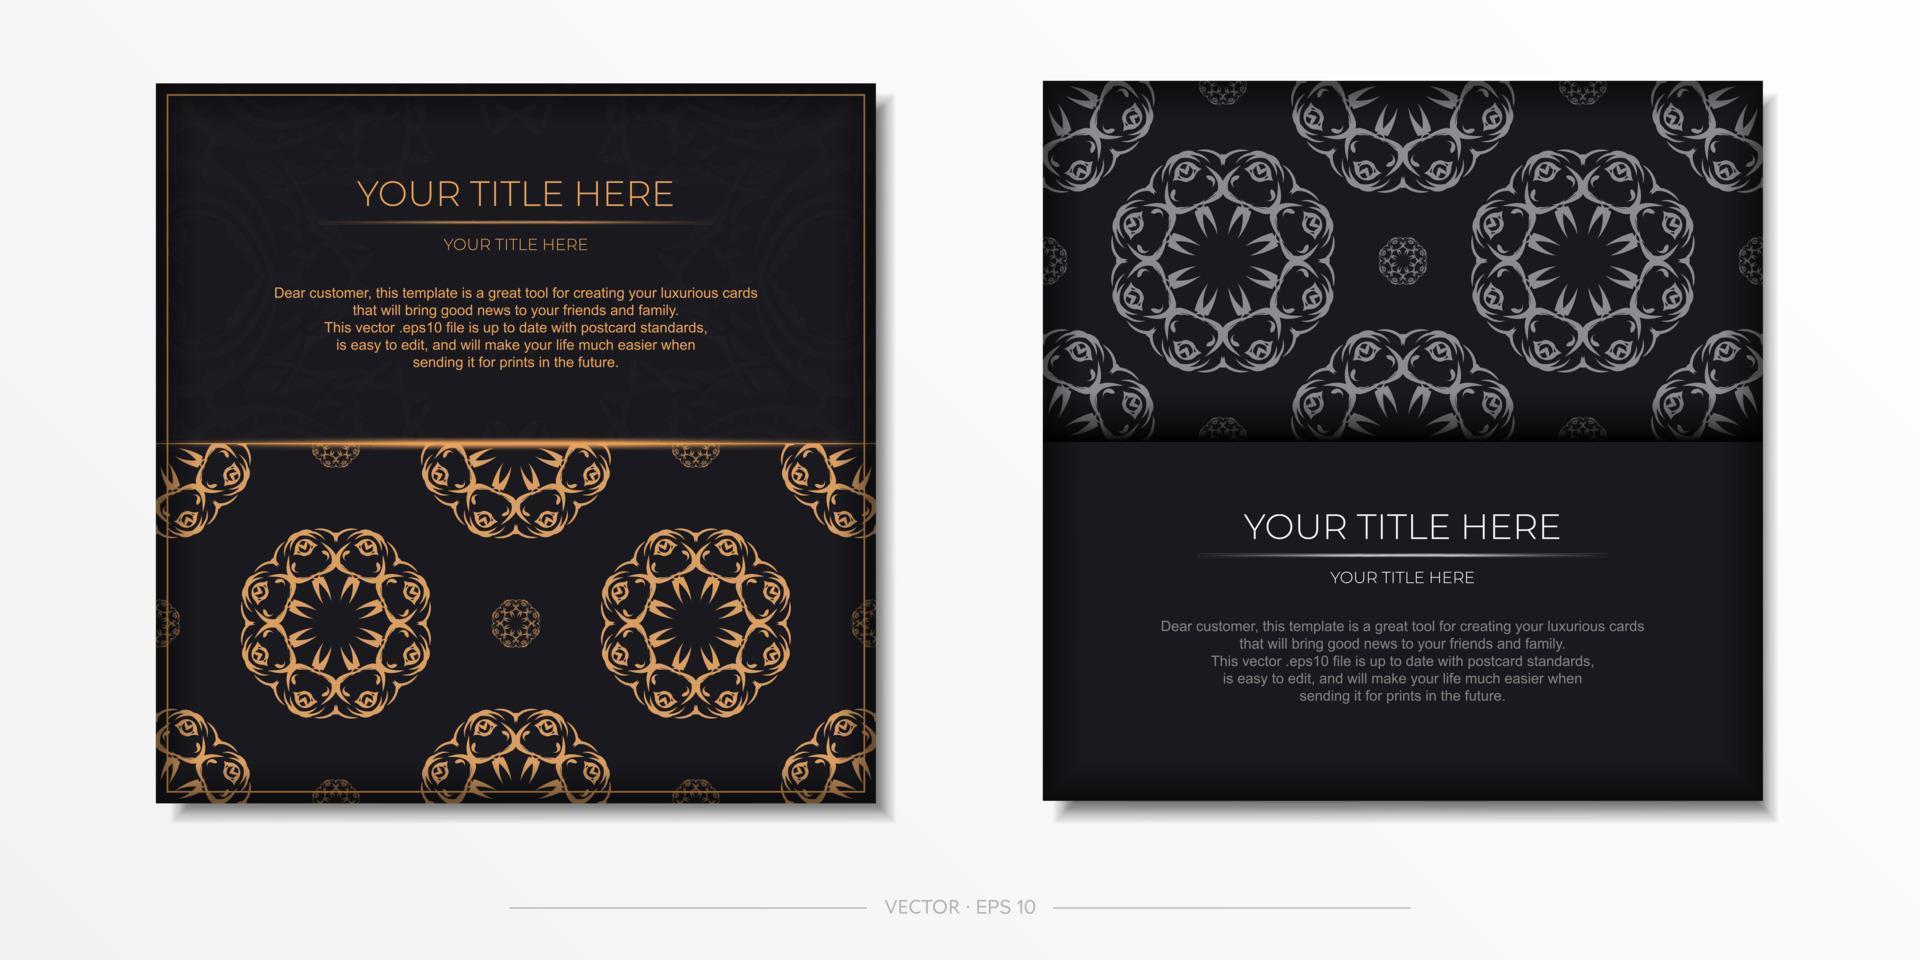 modelo de cartão postal de cor escura de vetor quadrado com padrões abstratos. design de convite pronto para impressão com ornamentos vintage.